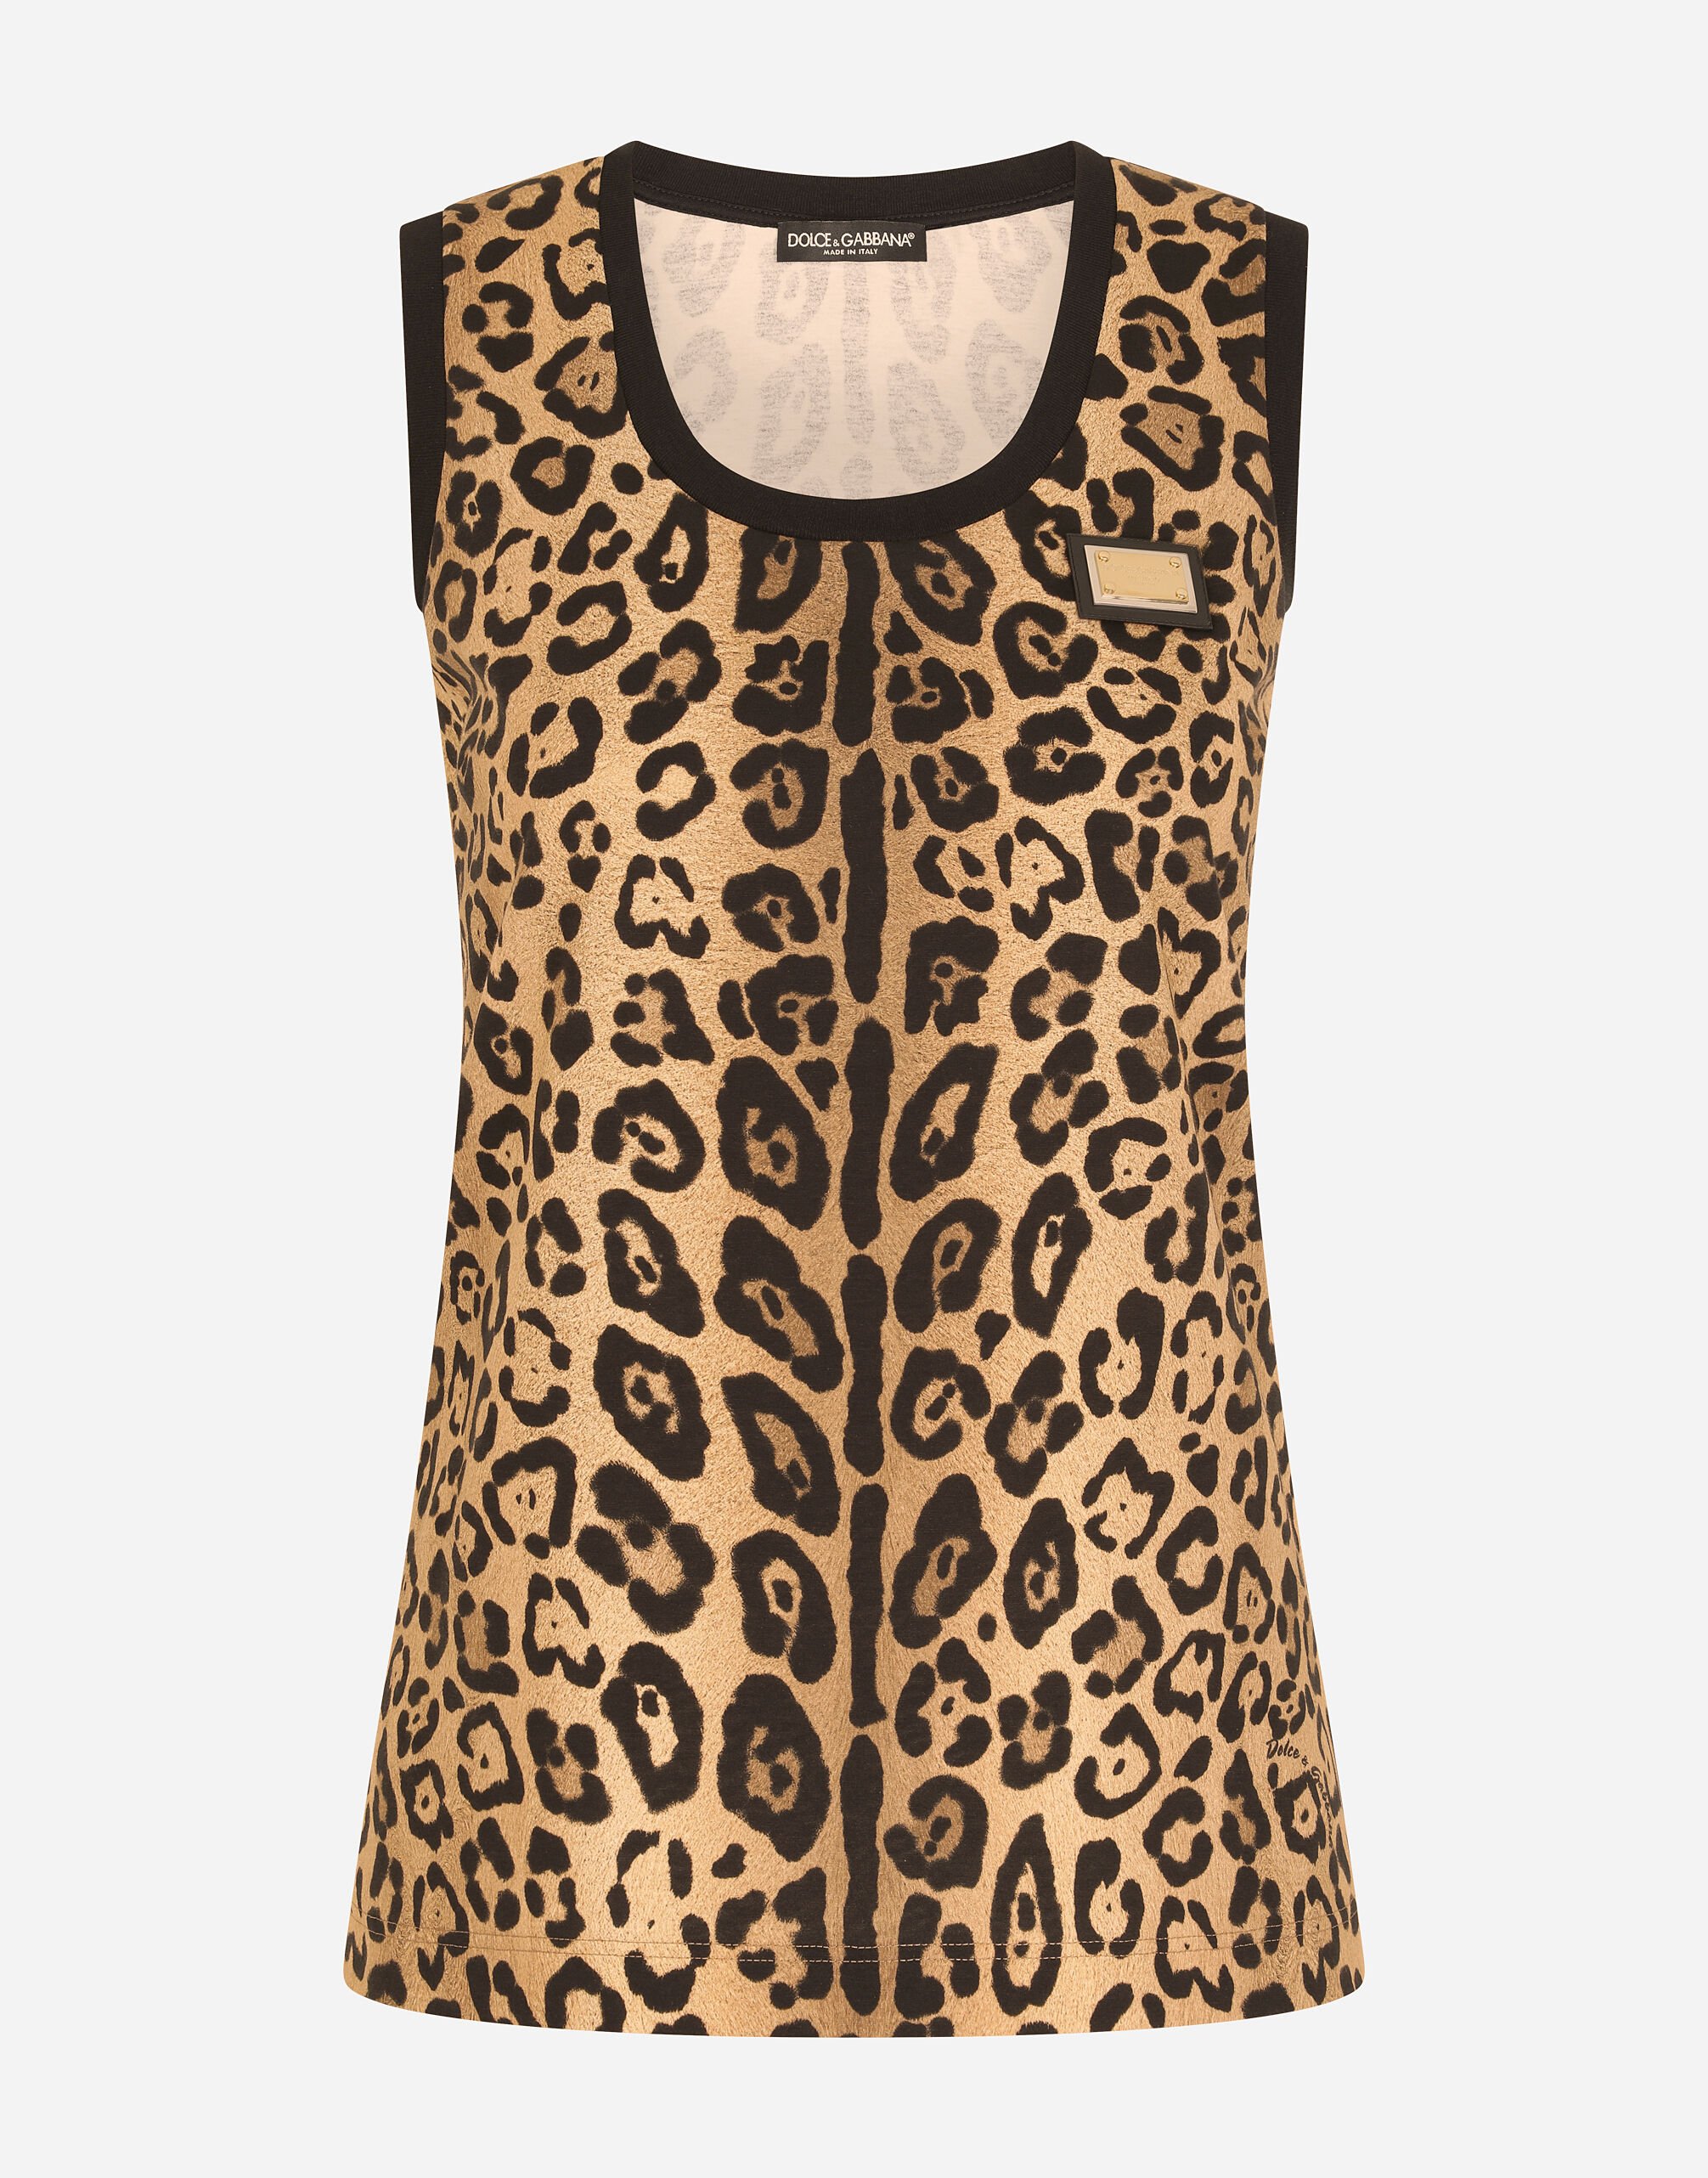 Dolce & Gabbana Leopard-print jersey tank top Print FXT02TJAHJZ